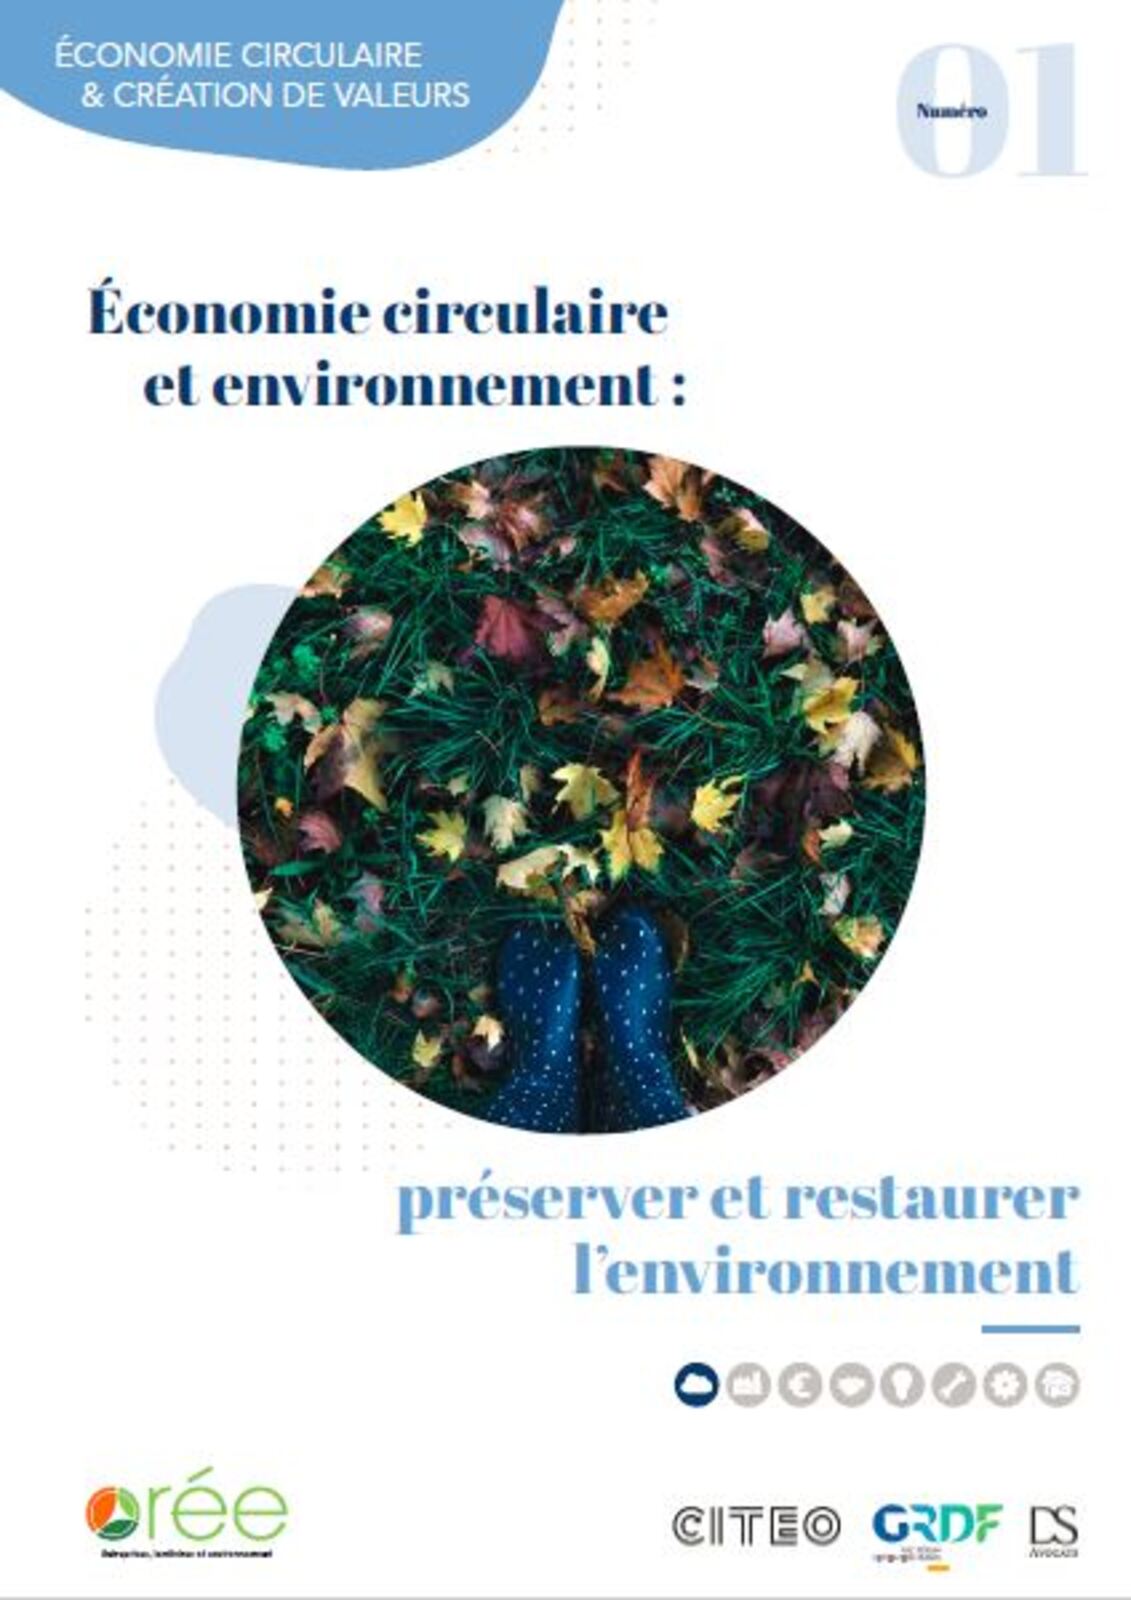 ORÉE publie le livret Préserver et restaurer l'environnement grâce à l'économie circulaire